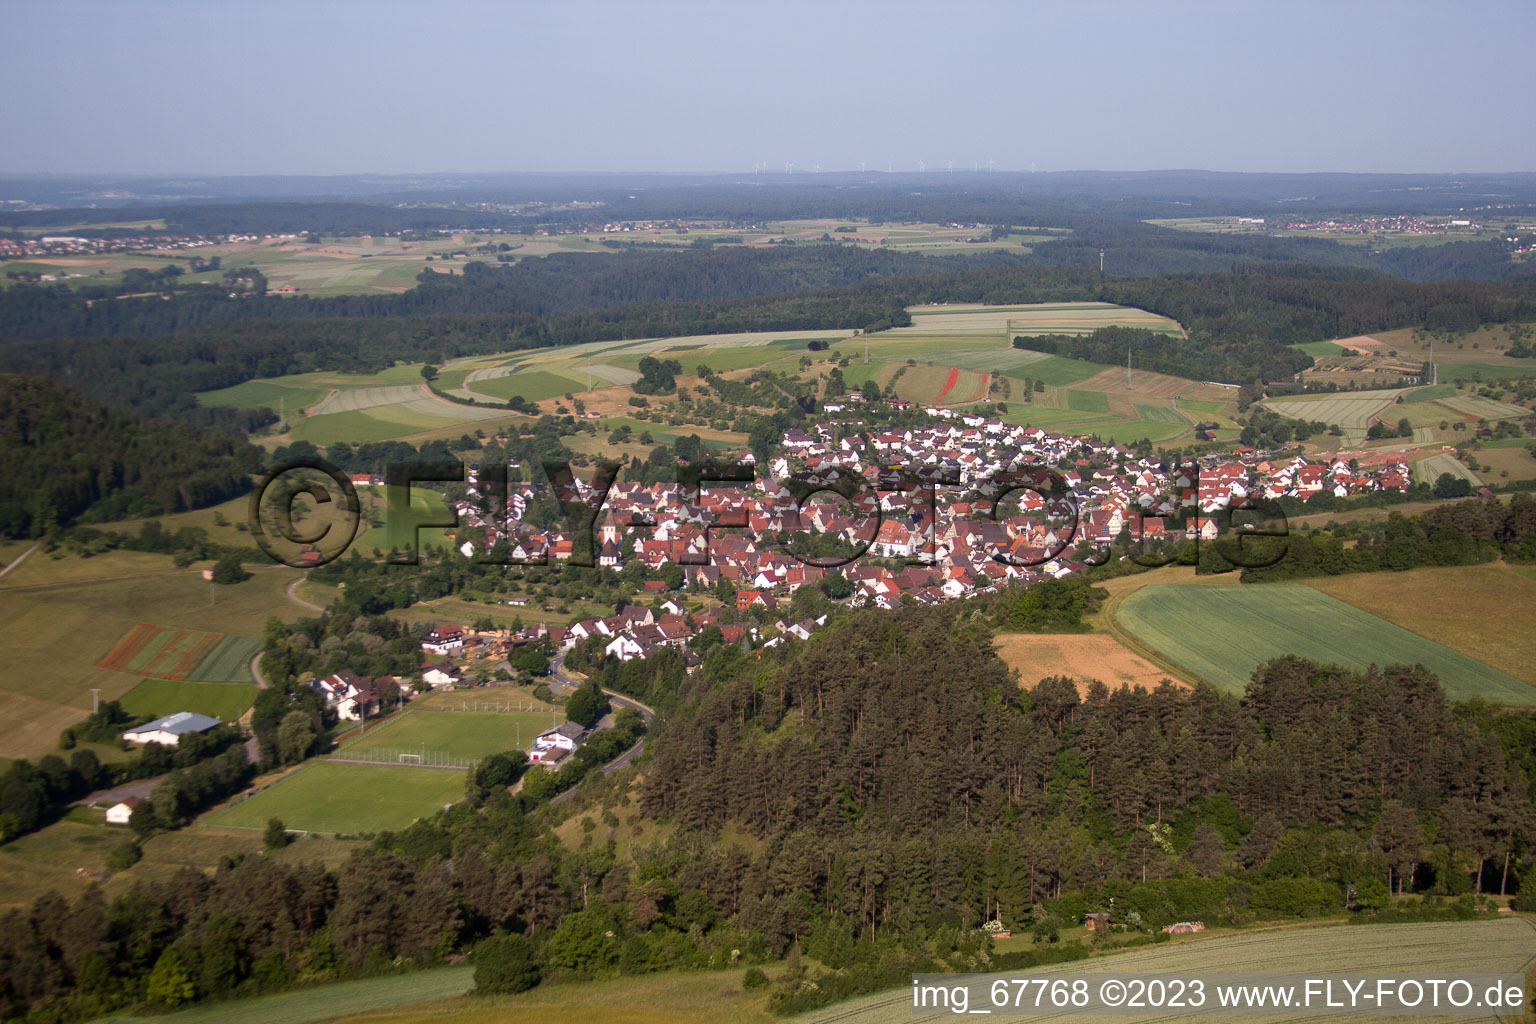 Luftbild von Gültlingen im Bundesland Baden-Württemberg, Deutschland